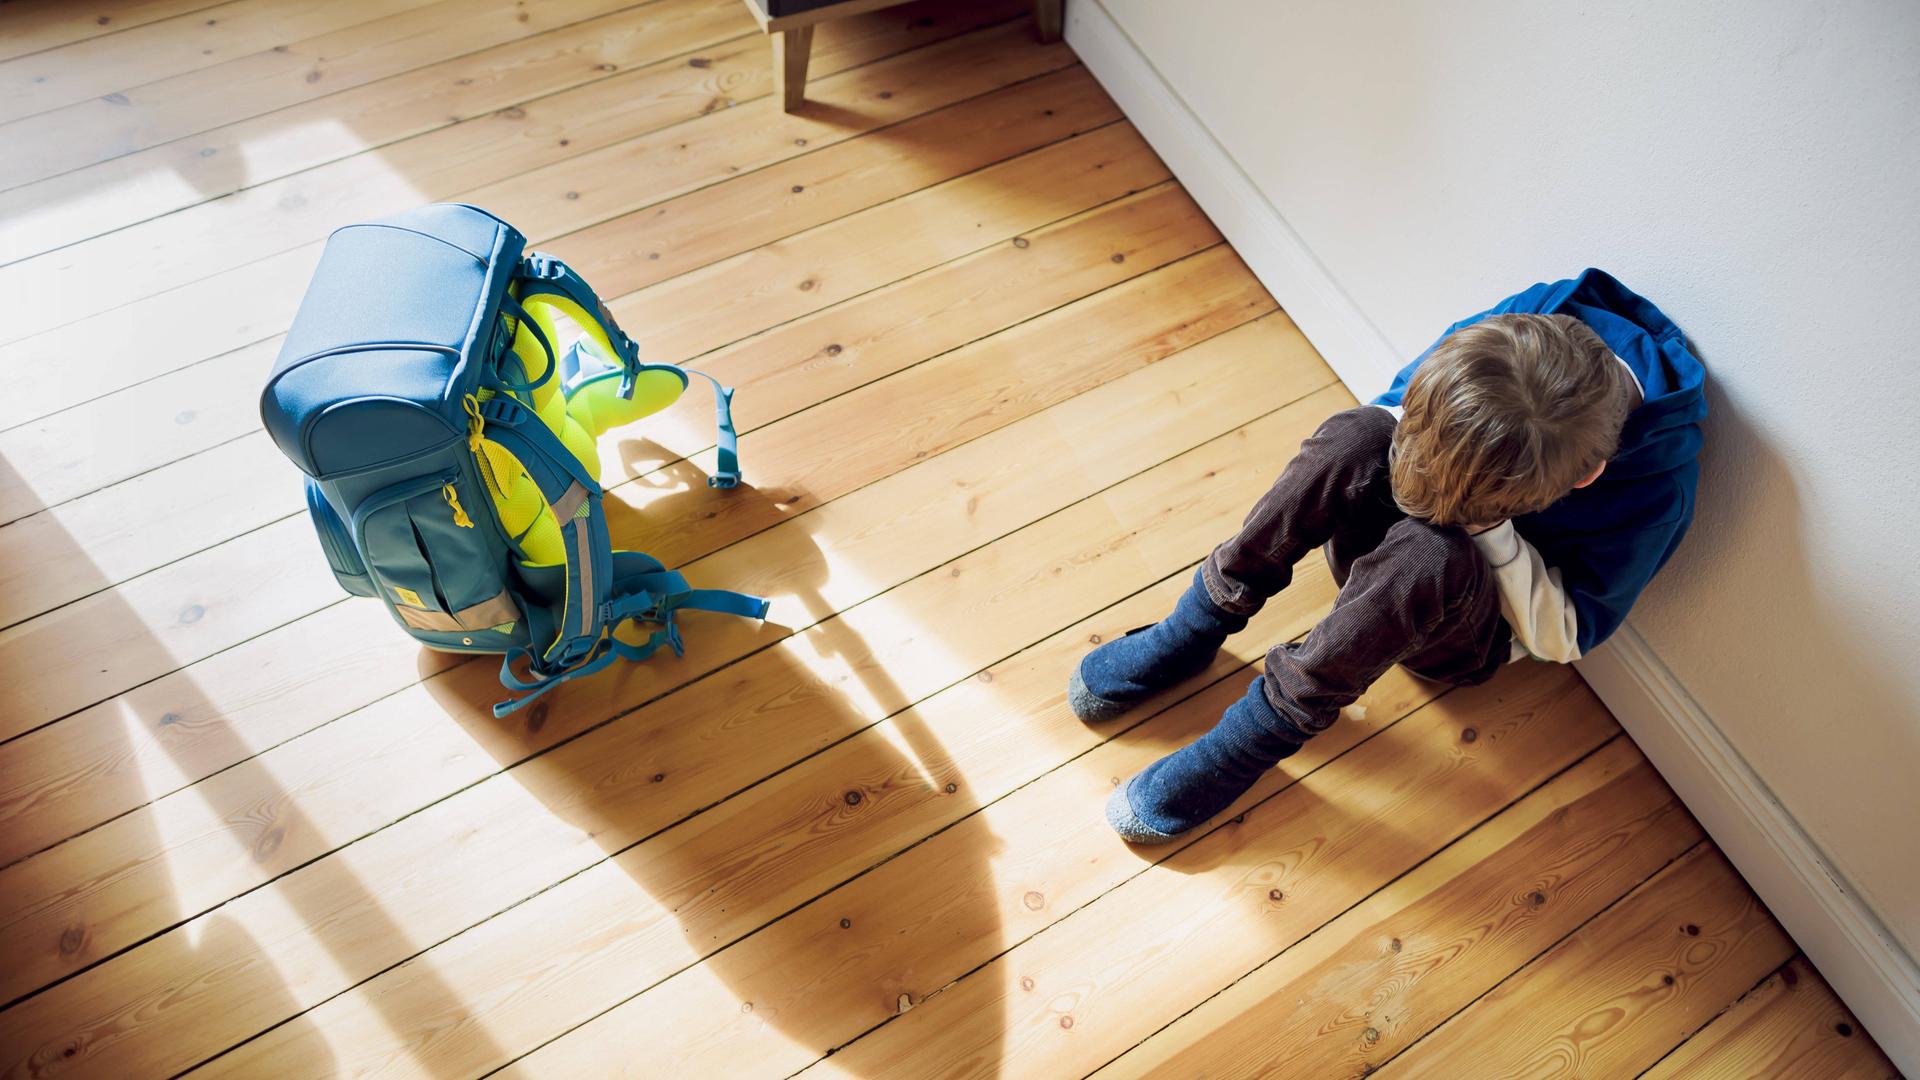  Ein Junge sitzt traurig in seinem Kinderzimmer neben seinem Schulranzen und versteckt sein Gesicht hinter seinen Händen.